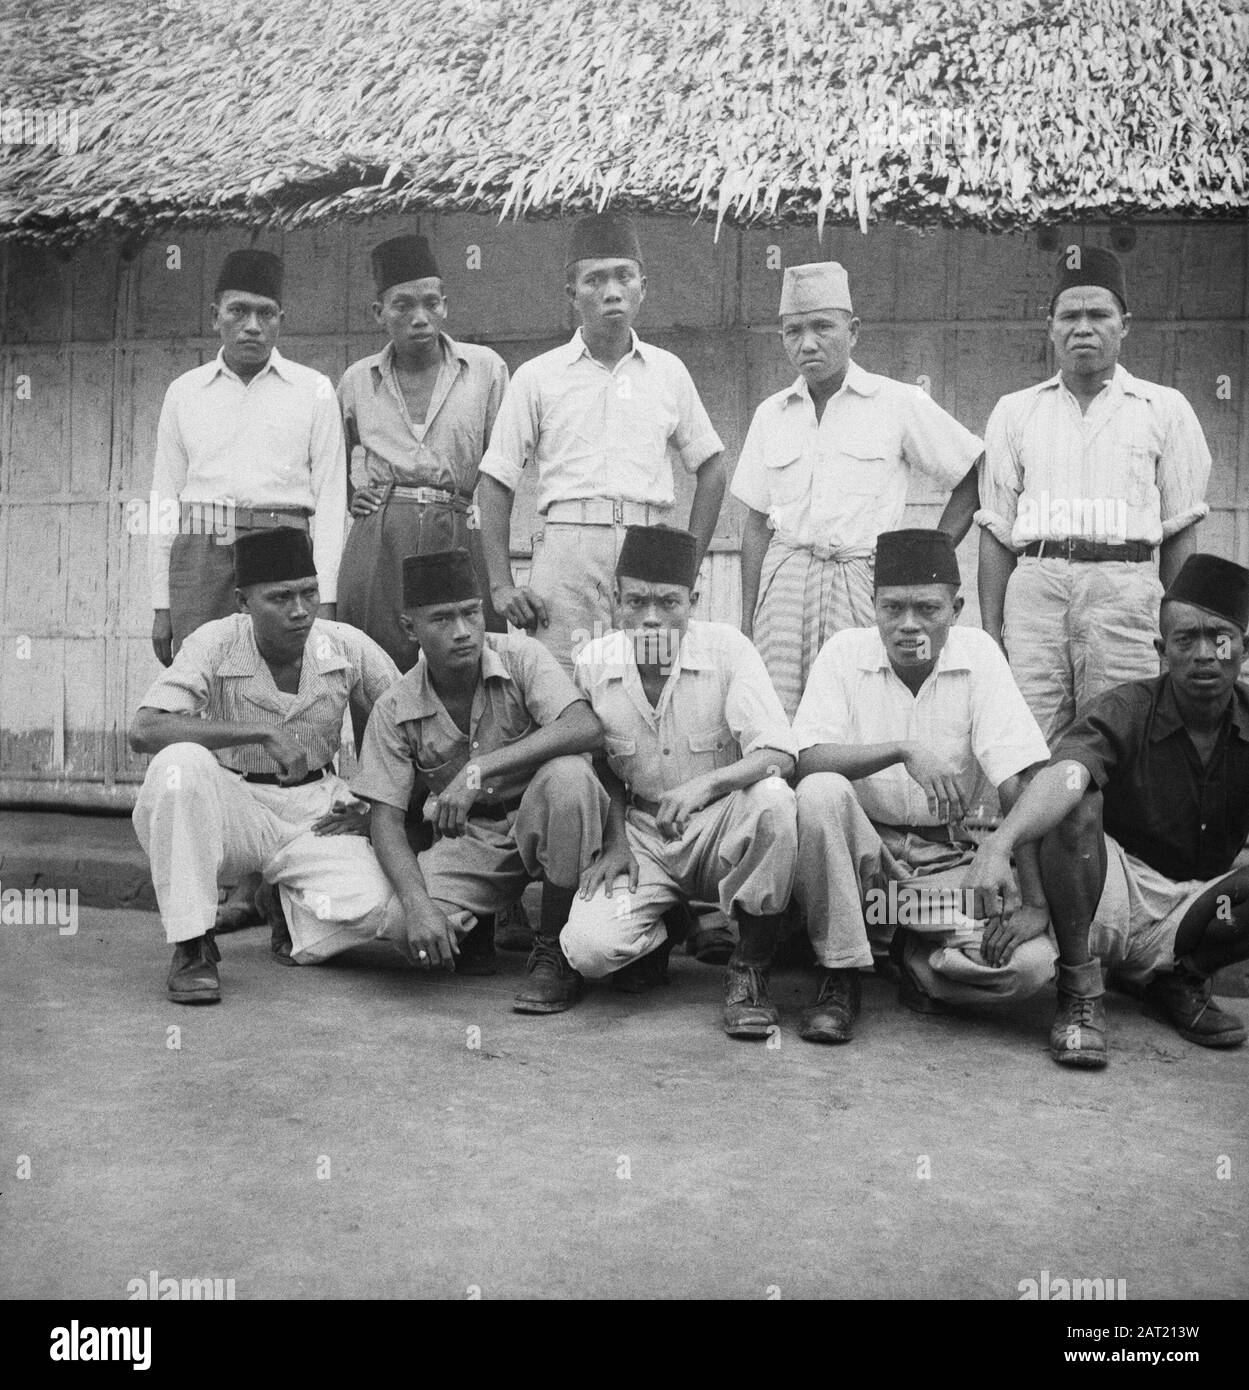 Am 8. Bis 1. 1948 nahmen T.N.i-ers-Extremisten, Verbrecher der schlimmsten Art, am 8. Januar 1948 im Sektor Polobankeng (Celebes) gefangen, die im Gefängnis von Makassar auf ihre verdiente Strafe warteten. Angesichts der vielen leitenden Beamten, die die Gruppe zählte, waren sie bei der Abgabe von Noten nicht sehr bescheiden. Fanatische Extremisten, halb in Zivilkleidung gekleidet, halb in Uniform. Stehend von links Major Ngampa, Major Pali, Luit Kol Sidja, Corp. Leo, Sgt. - Maj Oh, Lawa. Sitzend v.l.n.r. Luit.Kol. Sibali, Laute. - Coll. Relly, Oberst Leo, Oberst Temta, Luit. Mangon. Anmerkung: DJK Datum: 23. Juni 1948 Stockfoto